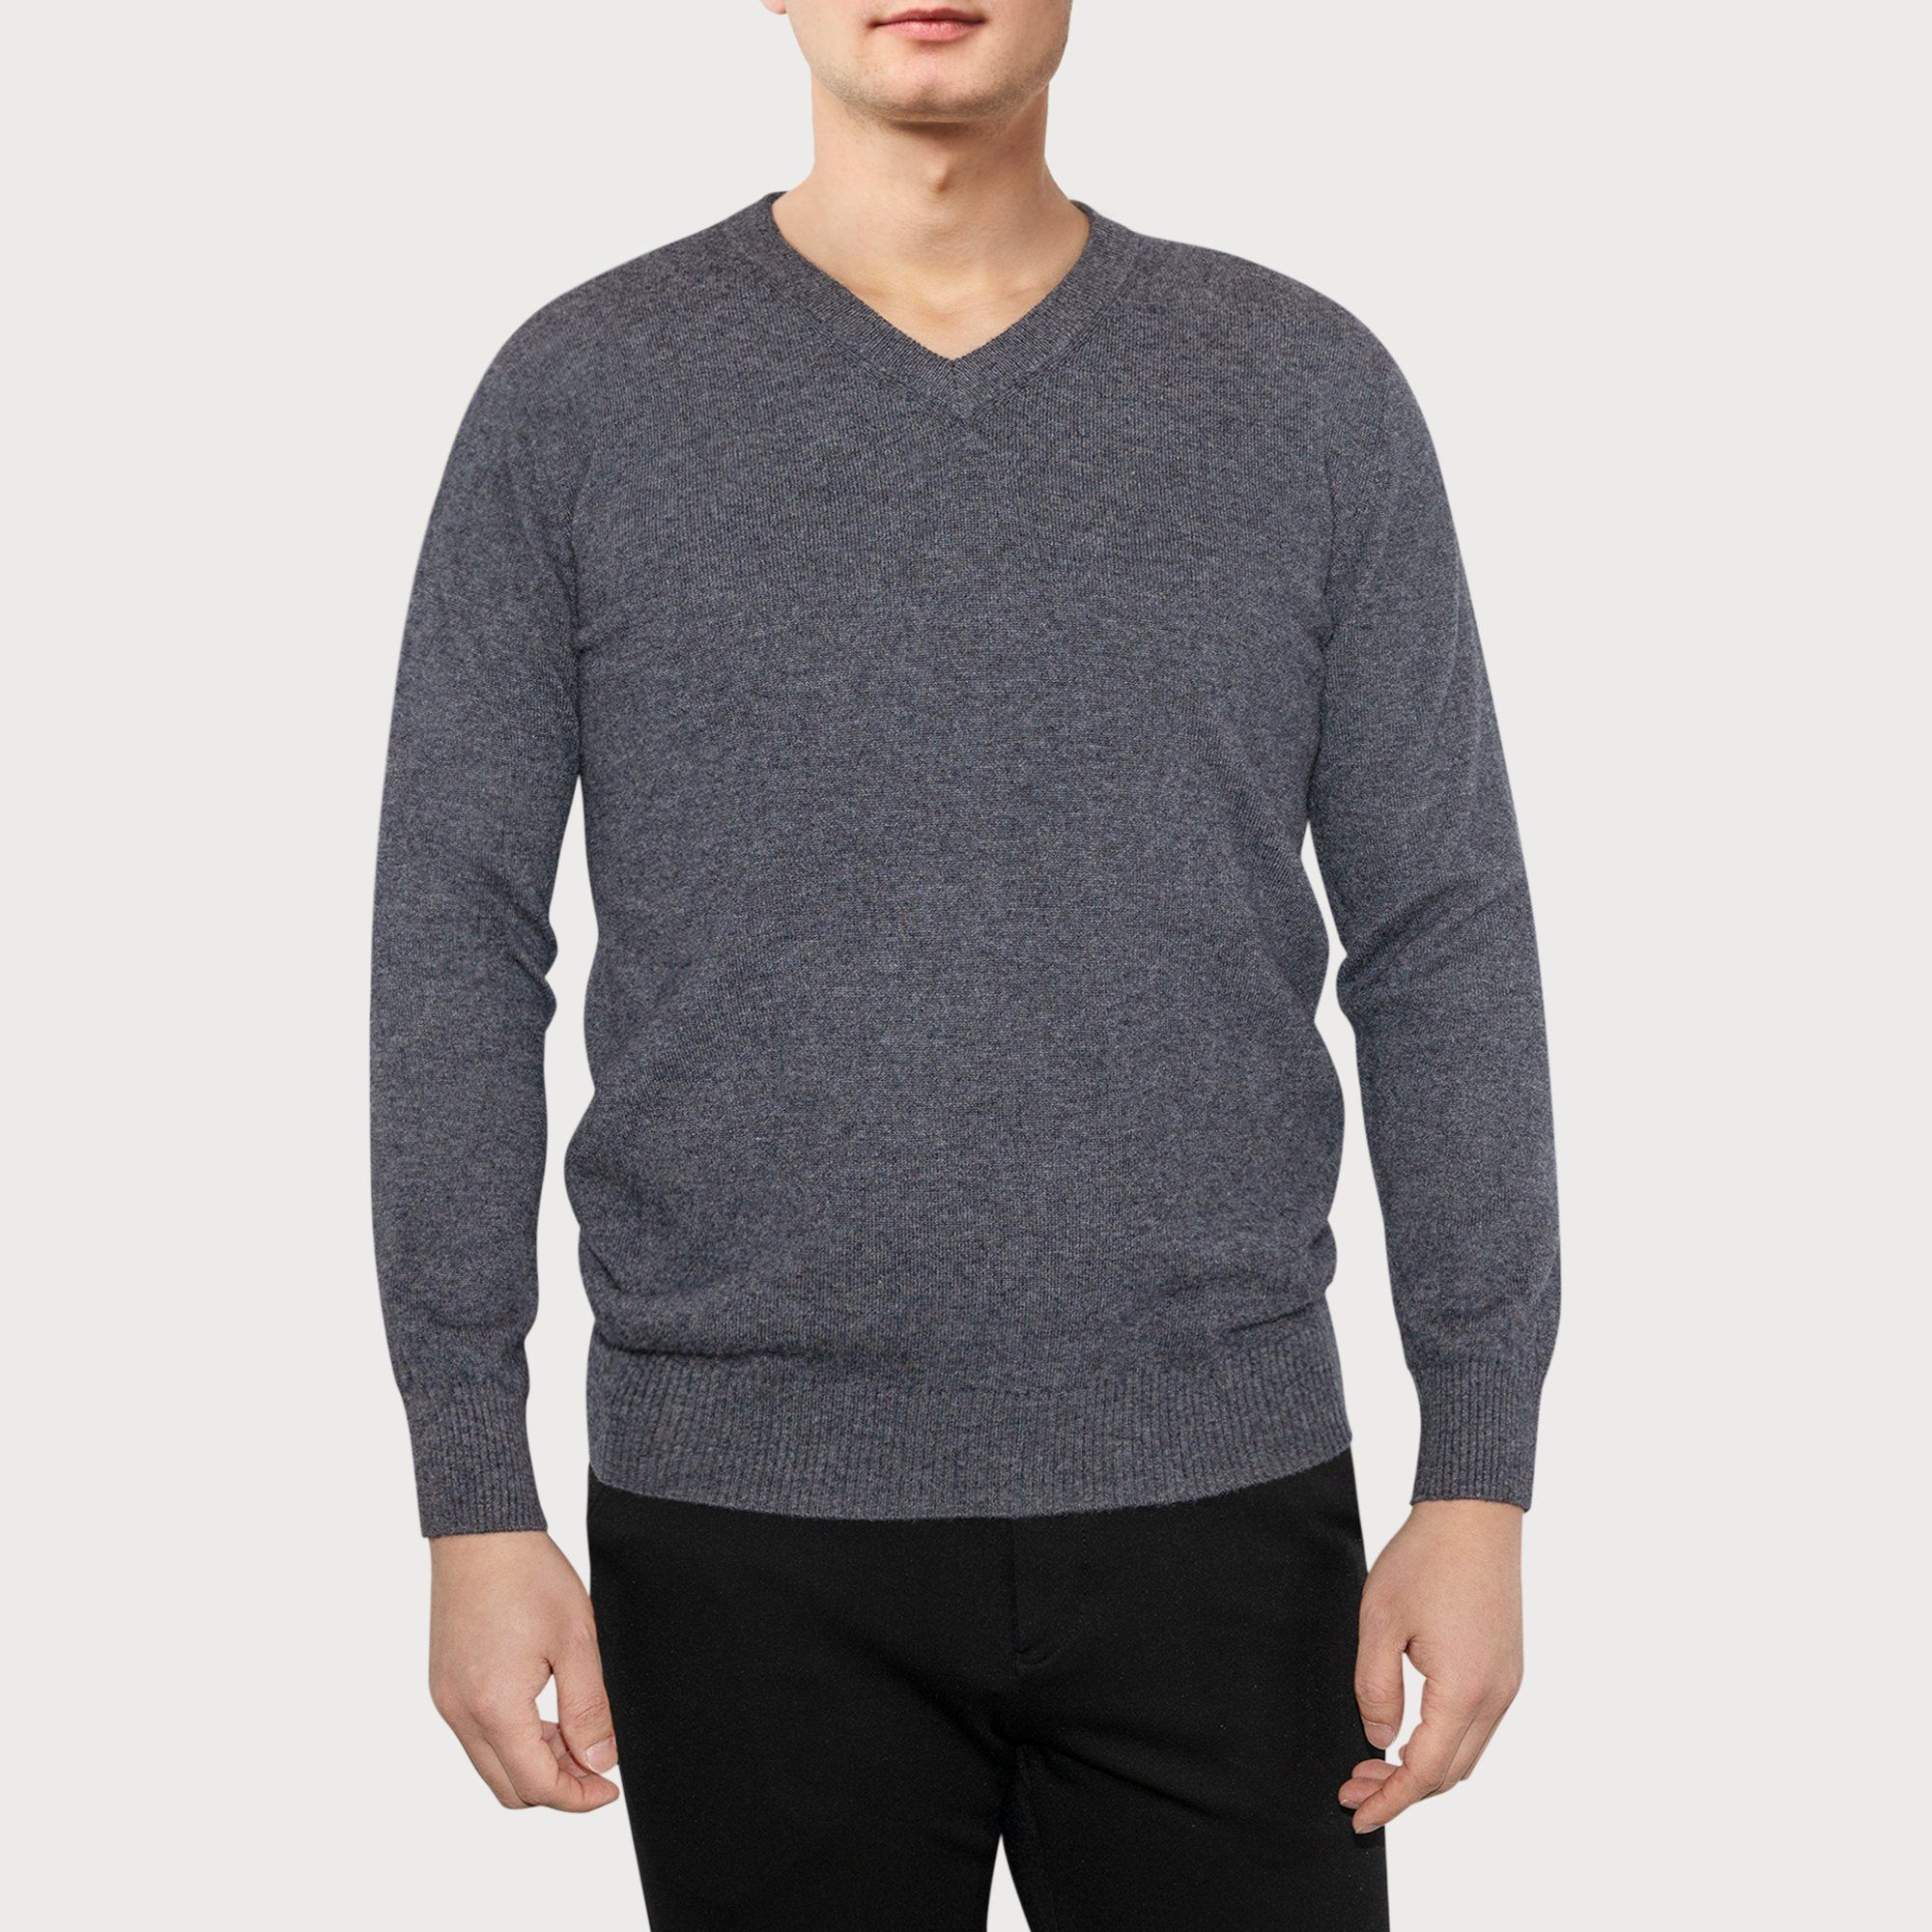 LEEZ Men V-neck Cashmere Sweater Dark Gray